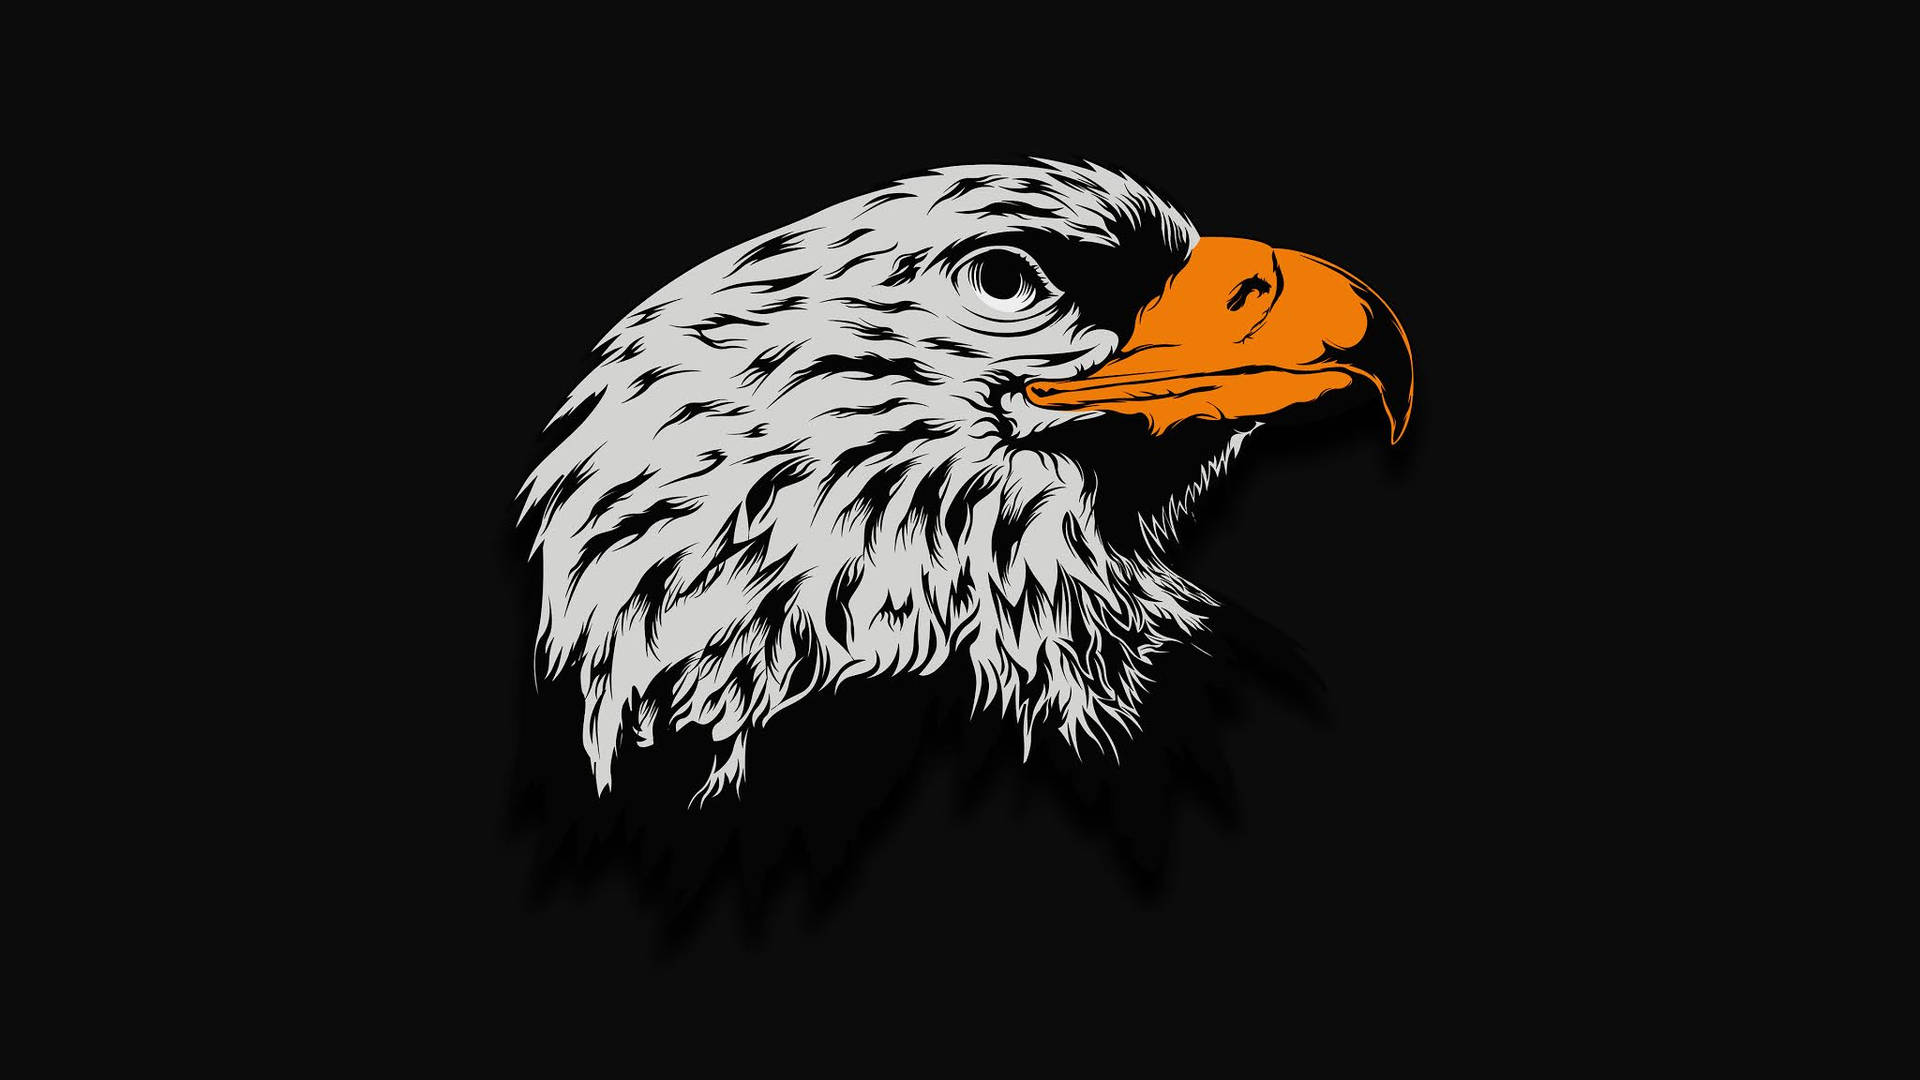 Aguila Bird Head Art Wallpaper